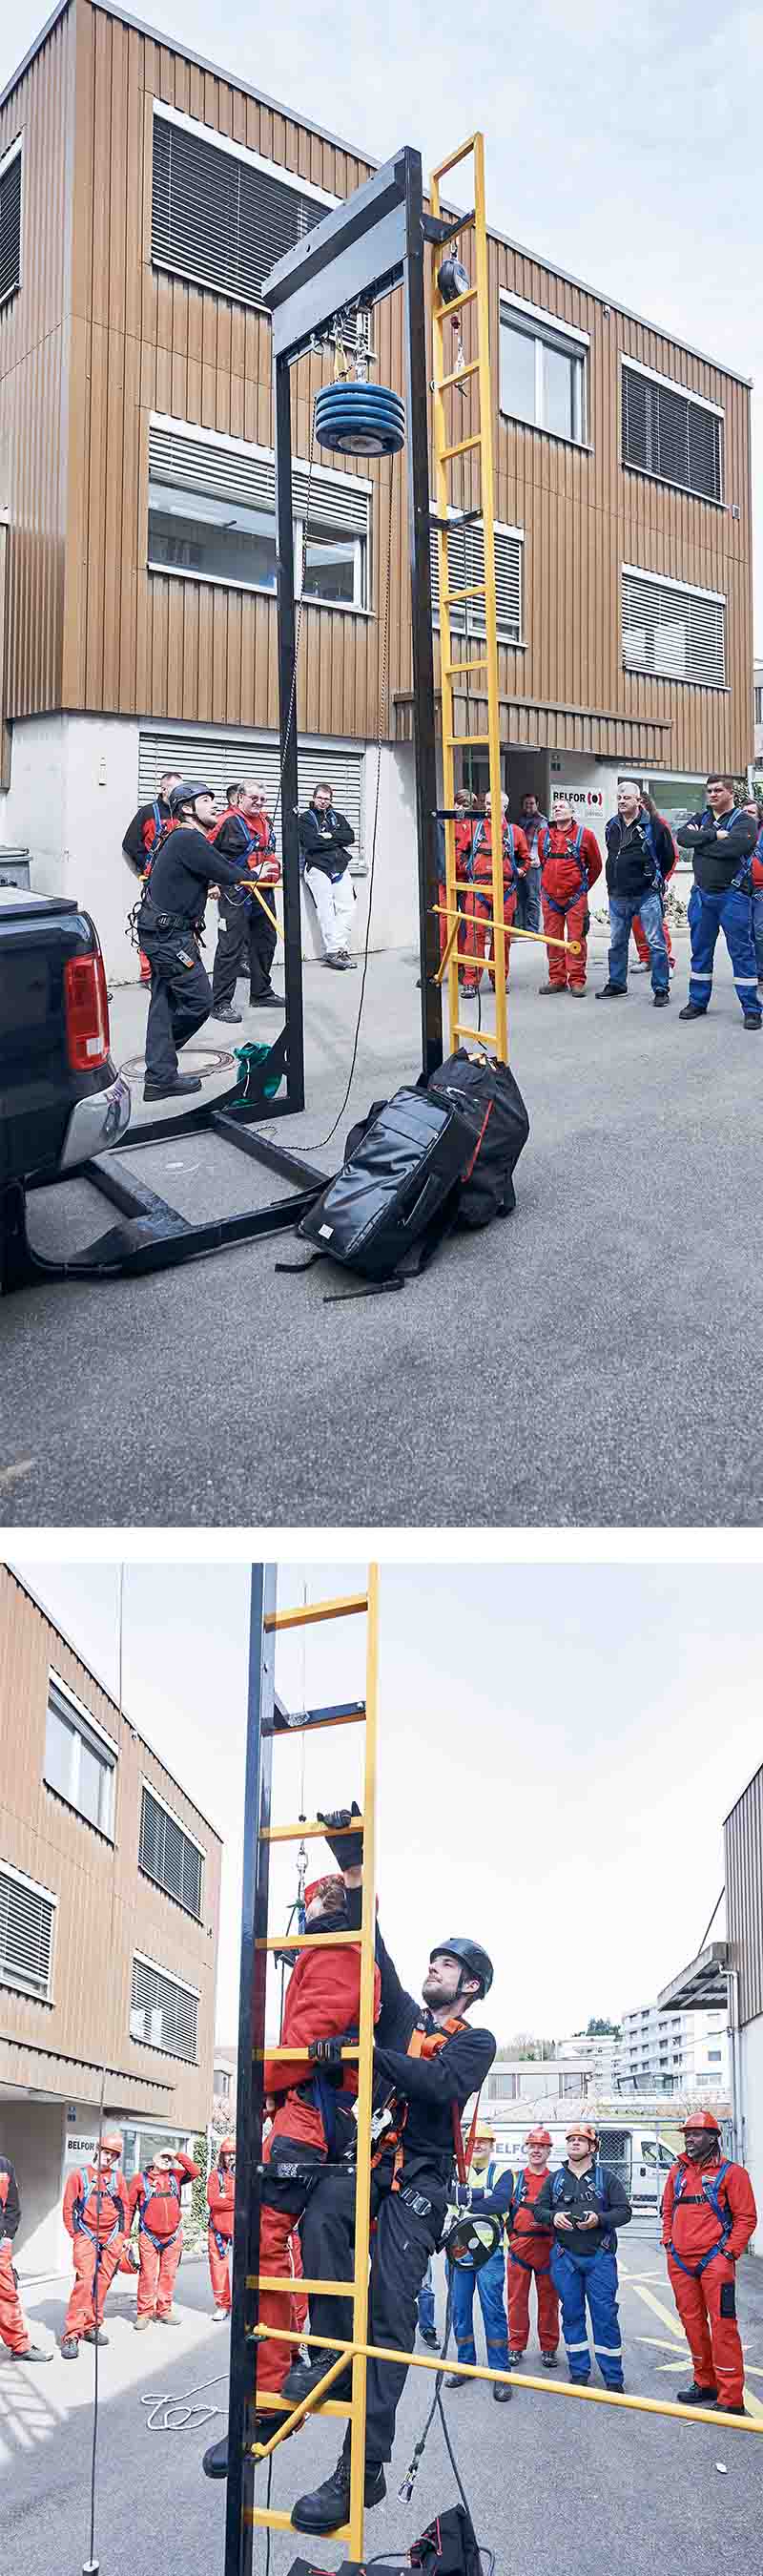 Zwei Bilder untereinander: Schulung von Absturzsicherung an einer gelben Leiter der mobilen Trainingsanlage von Certific